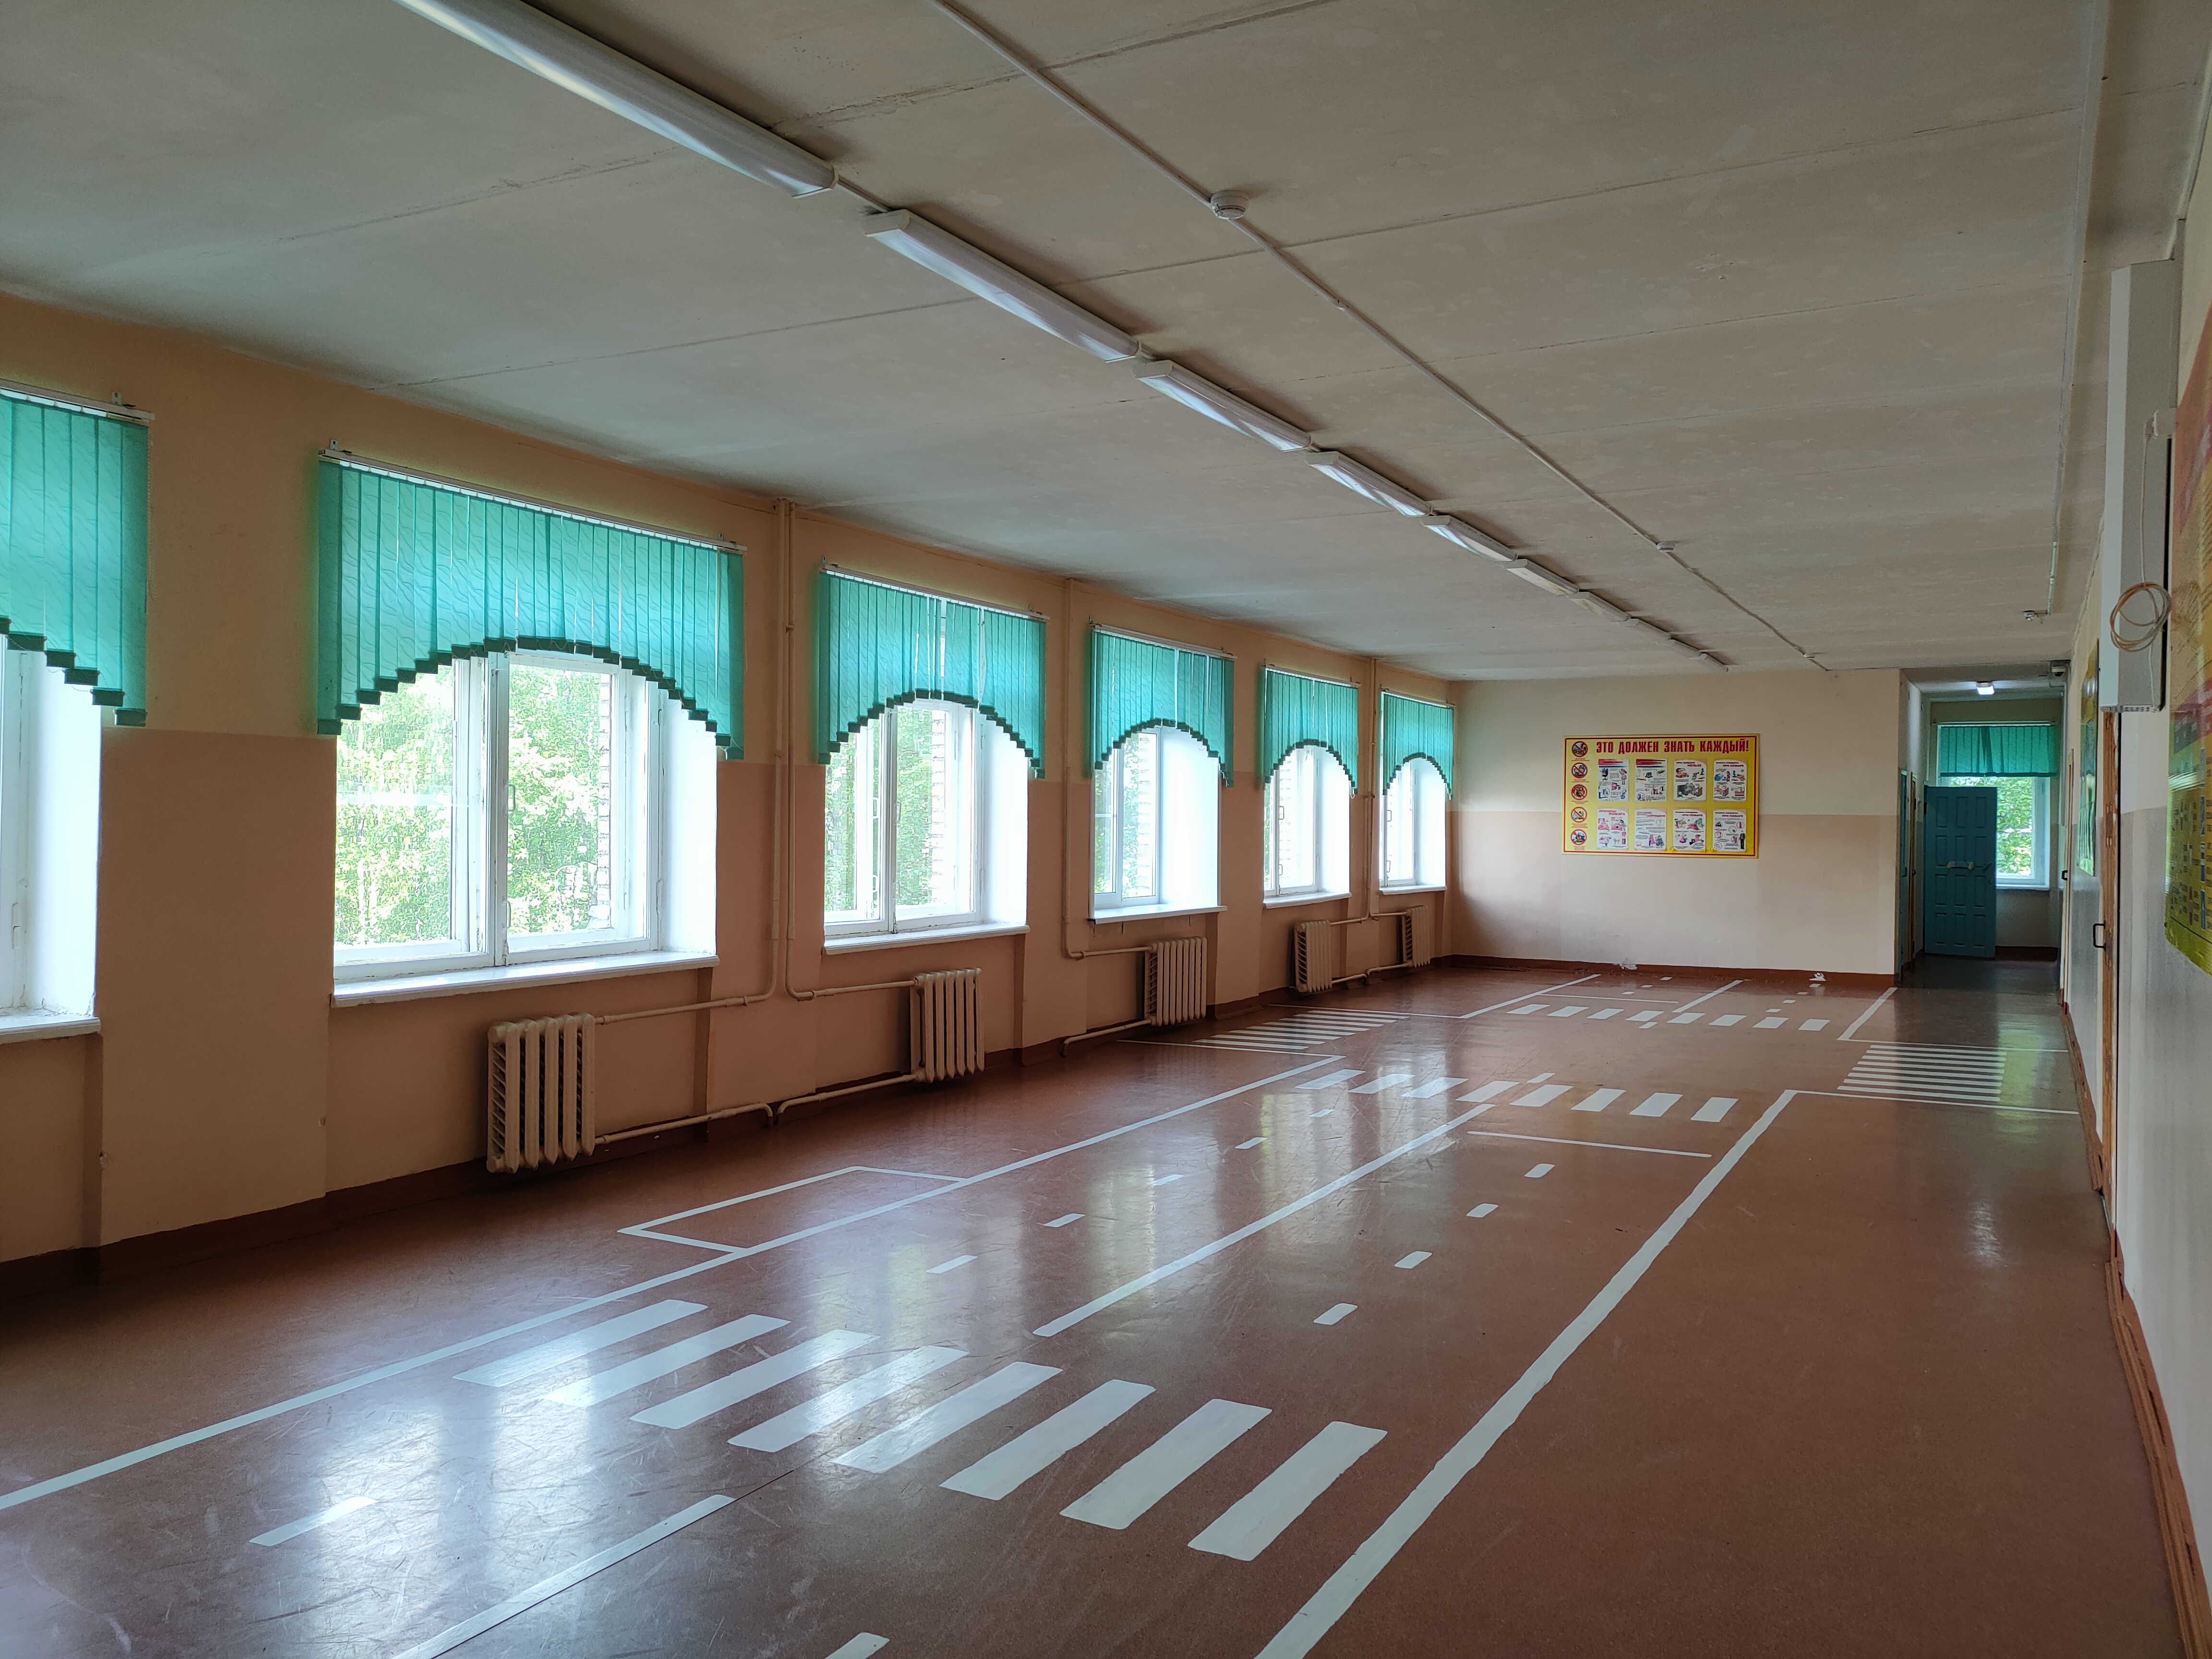 Школа (3 этаж)